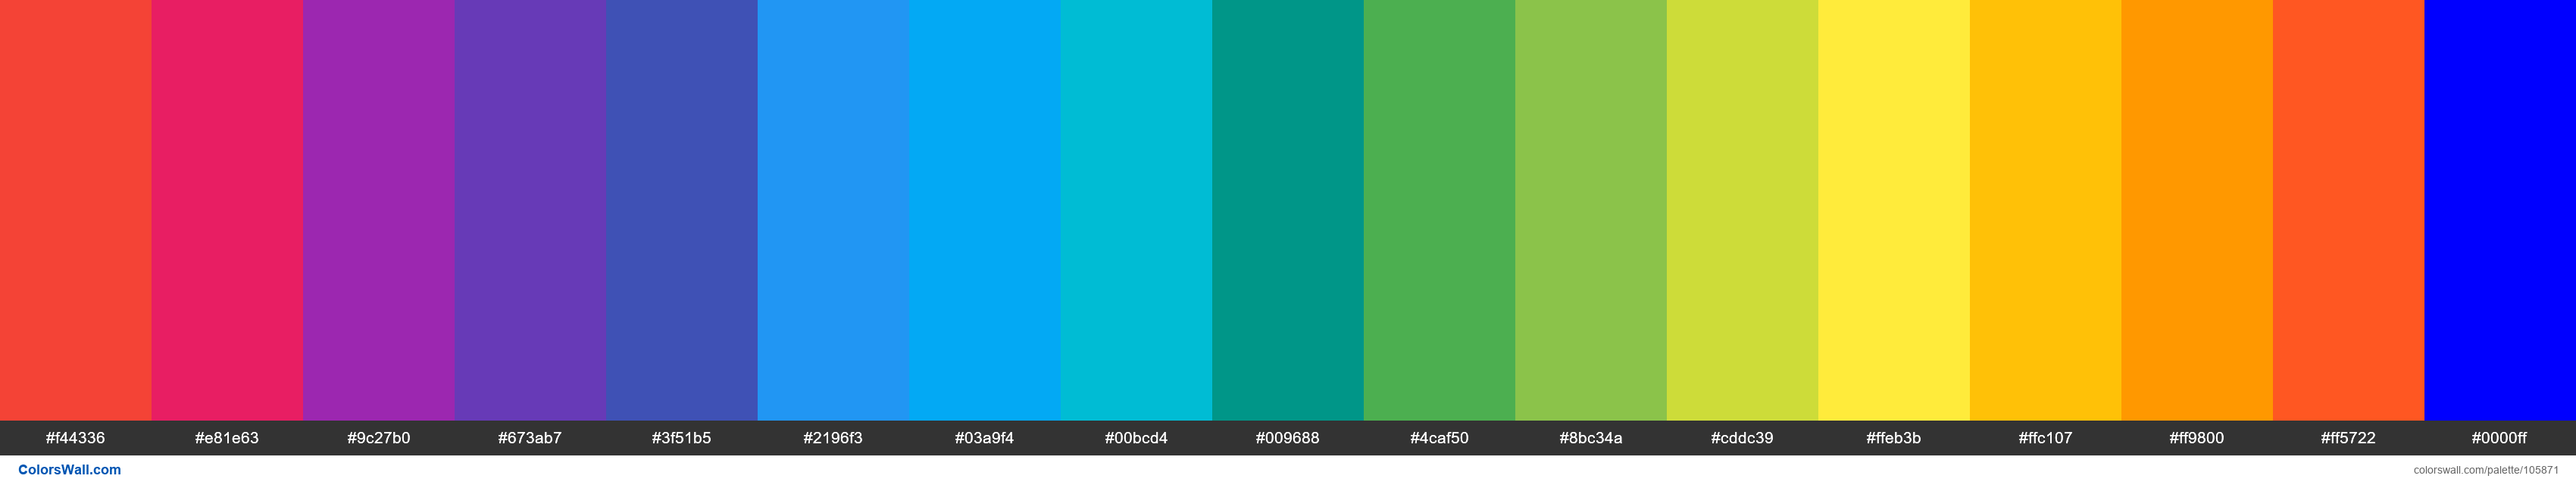 Material Design Color Palette (16 colors) (Blue) - #105871